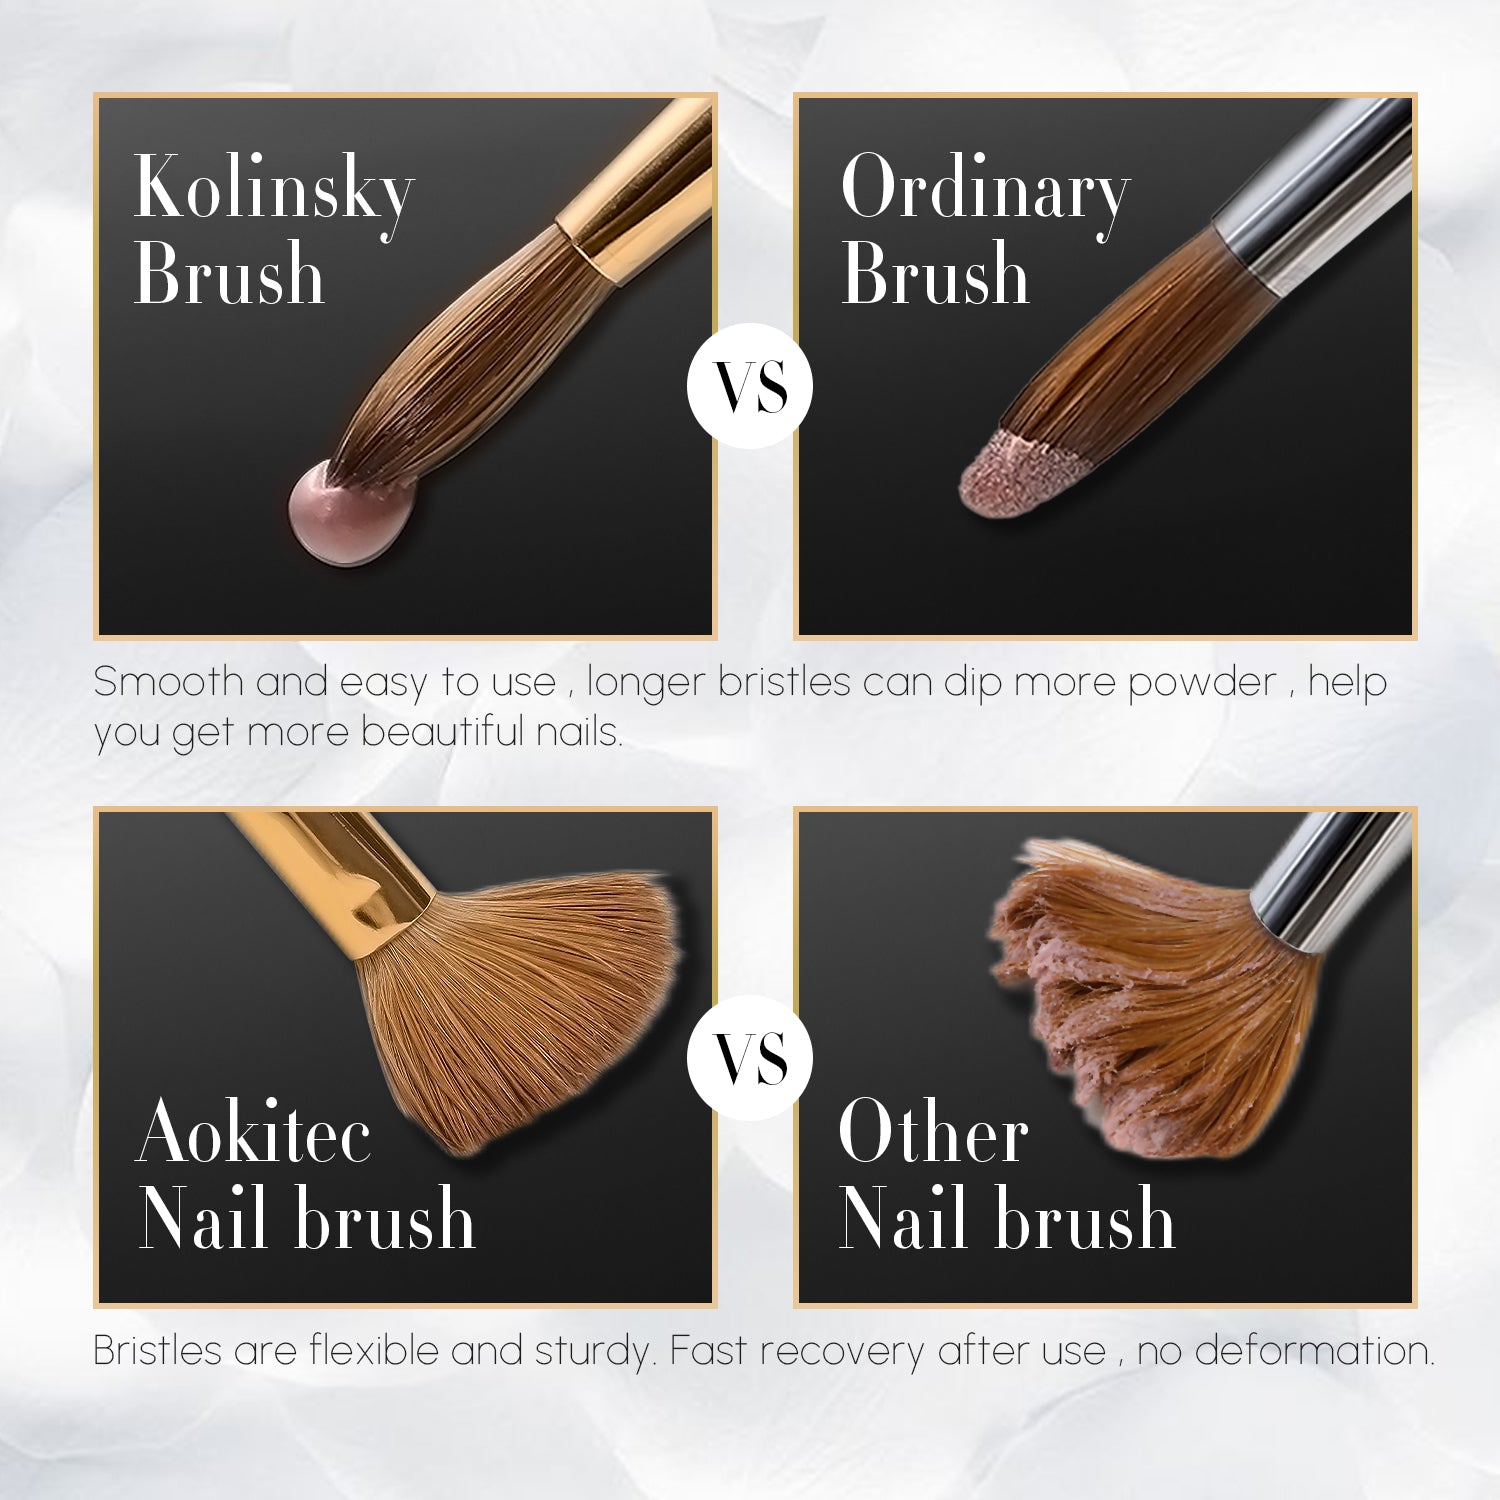 Makartt Pro Premium 100% Kolinsky Brush #14